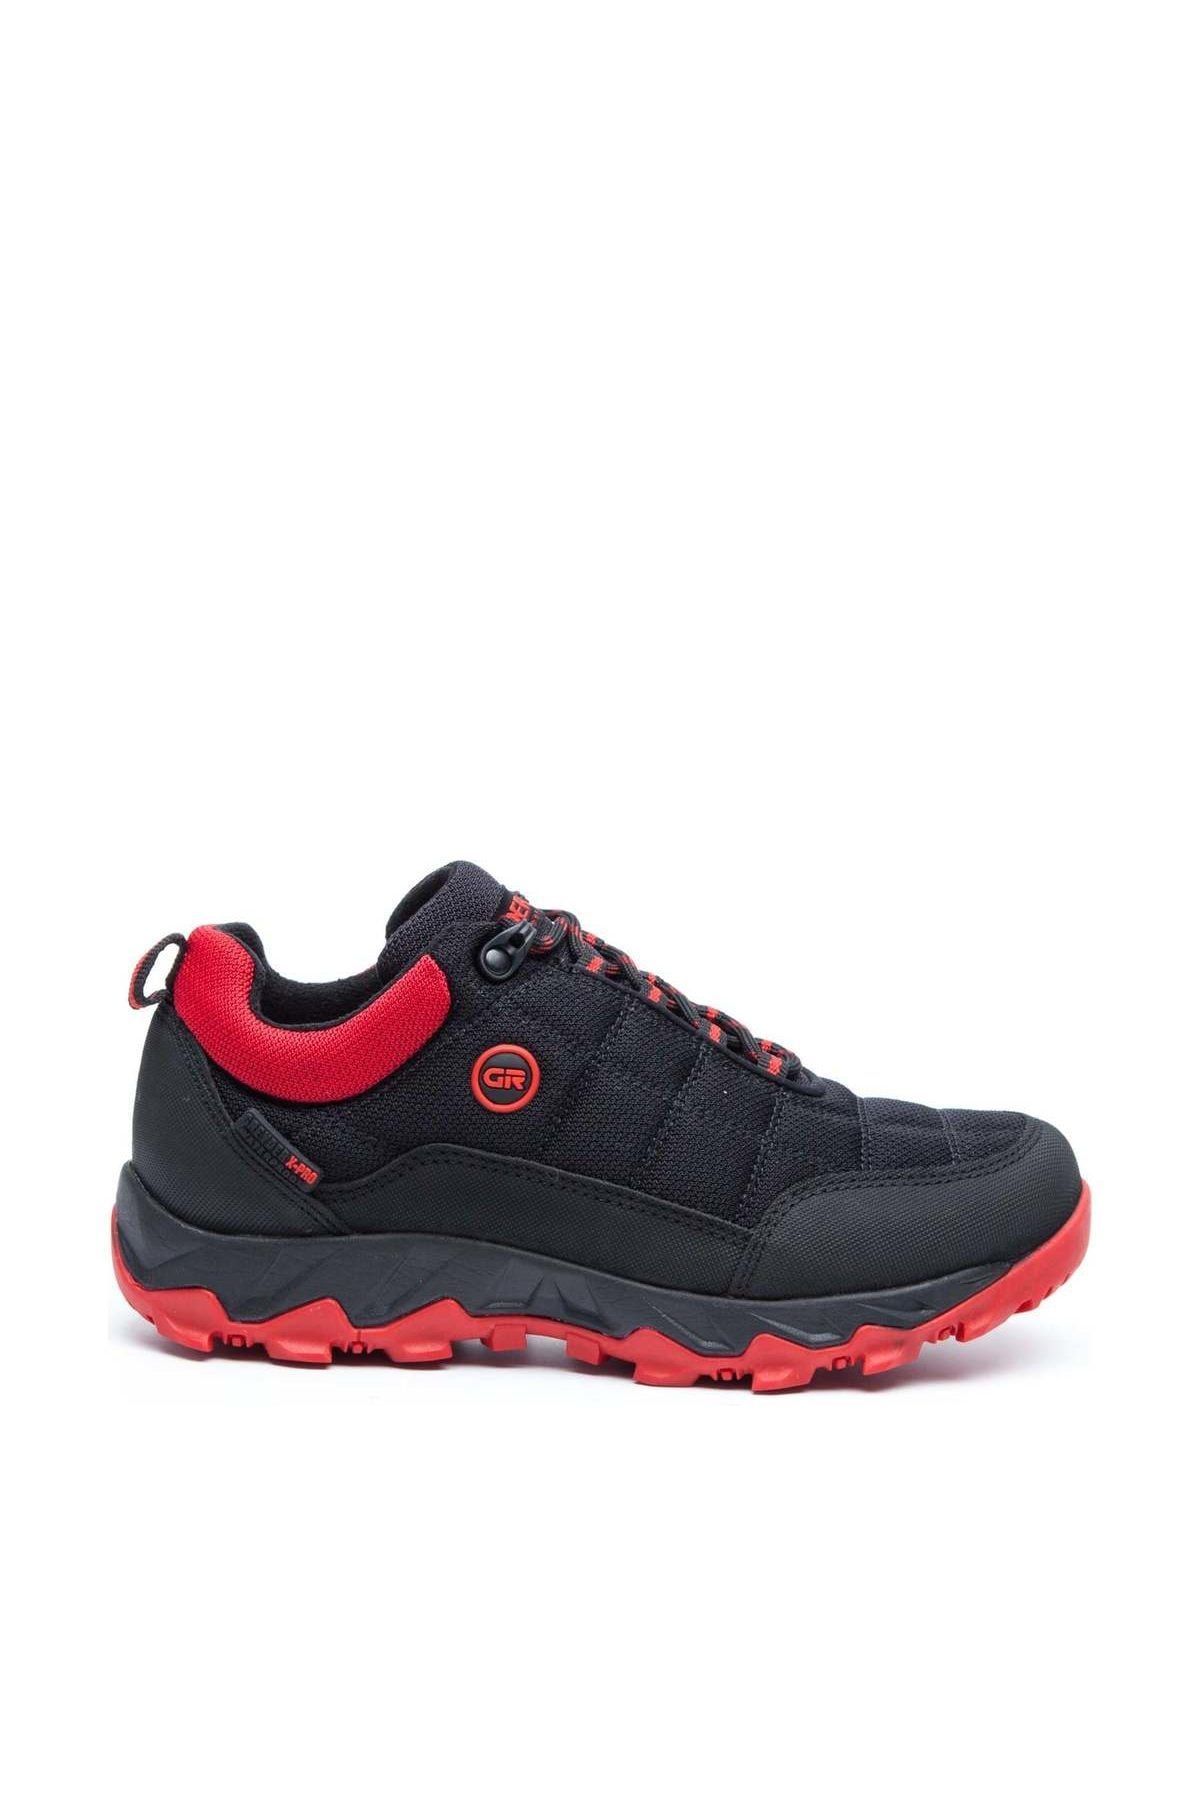 Greyder Kadın Siyah - Kırmızı Outdoor Ayakkabı 9K2GA00171